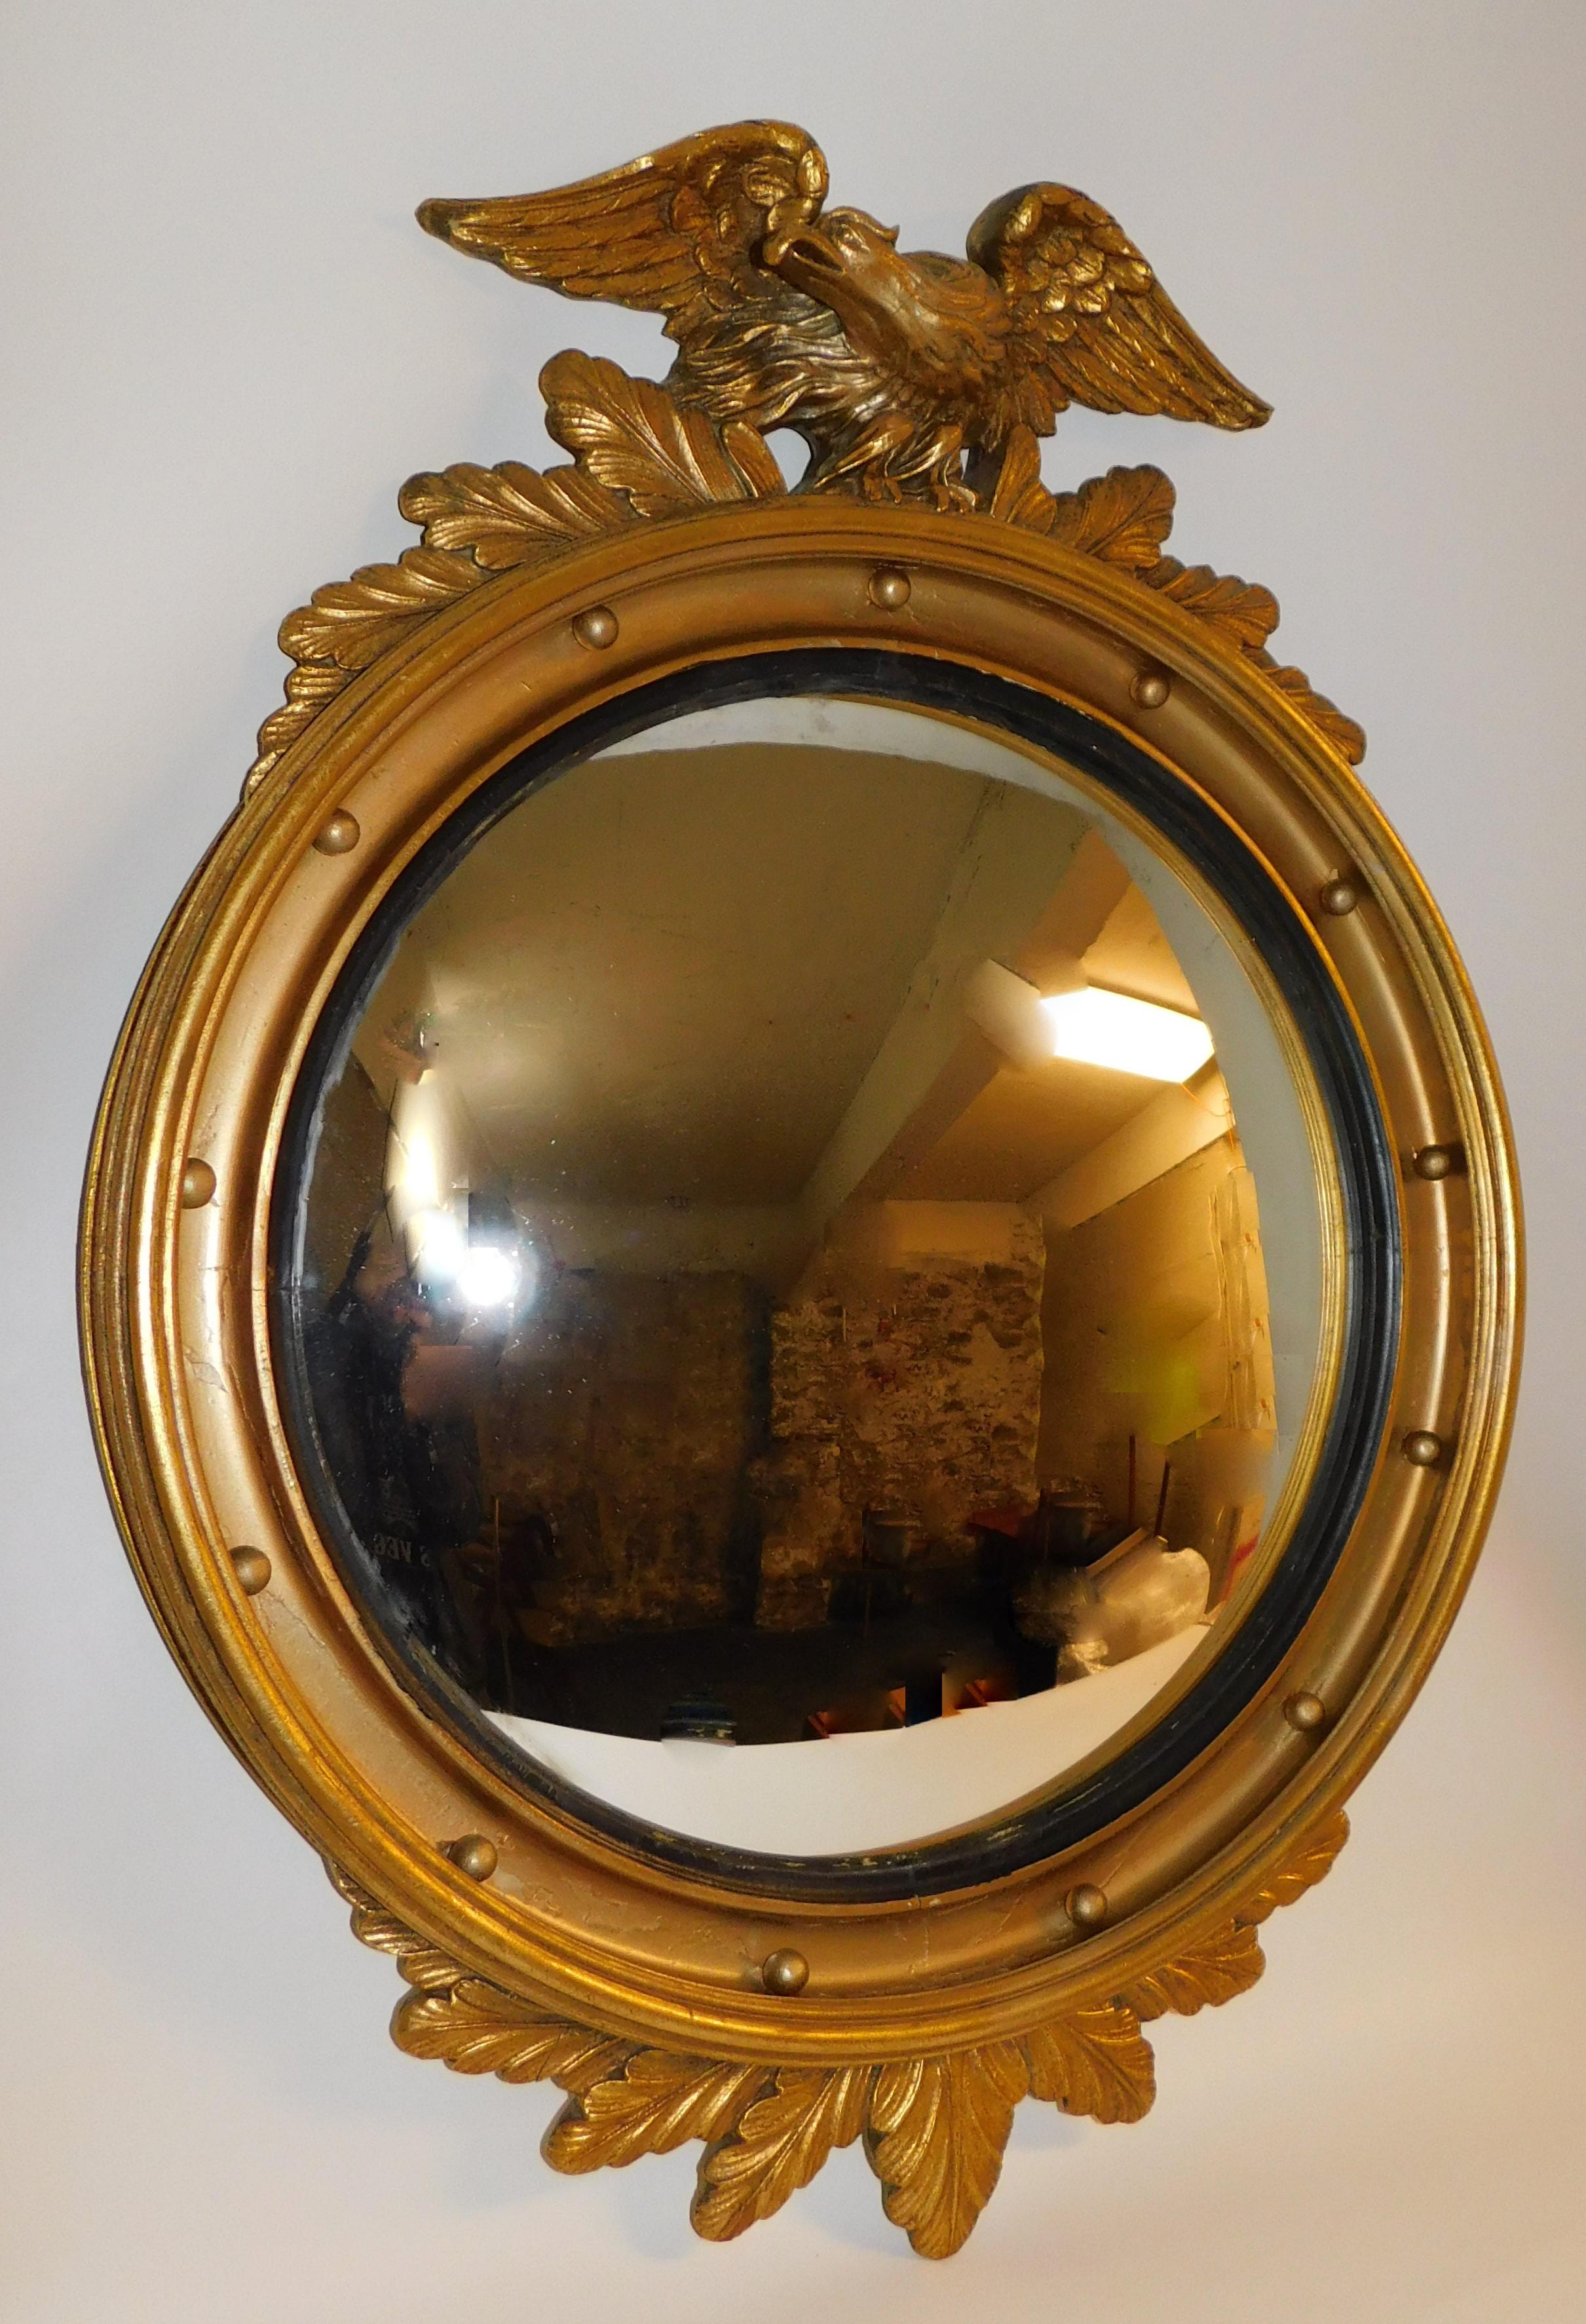 Grand miroir ovale convexe en bois sculpté et doré américain du 19e siècle avec aigle perché sur le dessus, sphères intérieures circulaires et anneau cannelé en ébène recouvert de dorure en grande partie intacte. Le miroir conserve le verre